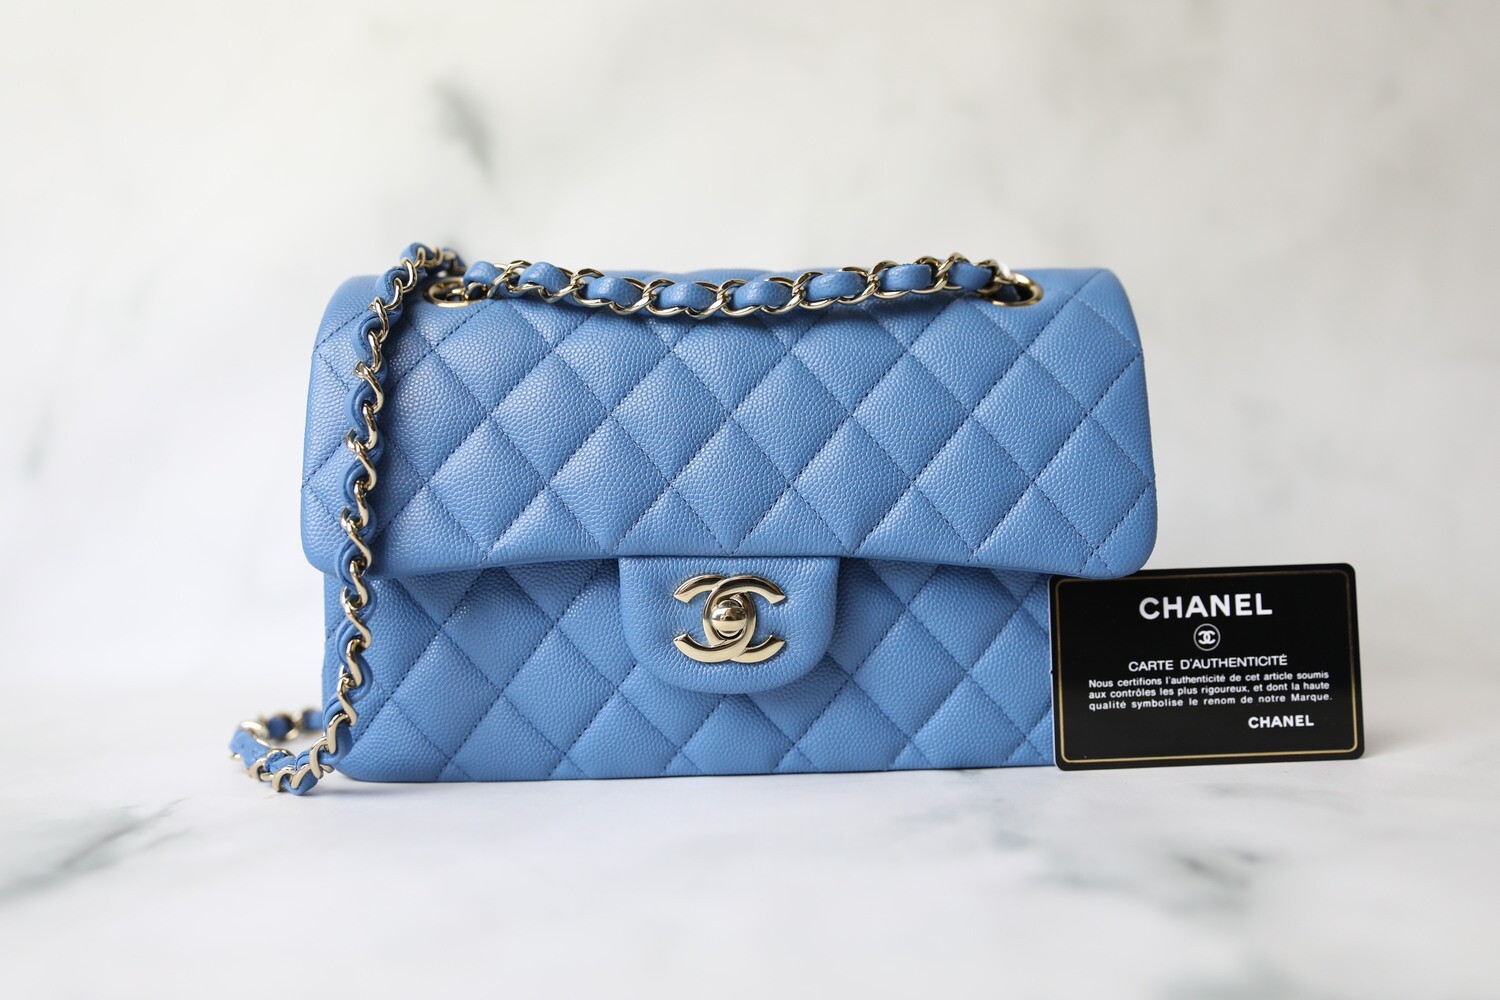 Chanel Classic Small, 21P Blue Caviar with Gold Hardware, New in Dustbag  WA001 - Julia Rose Boston